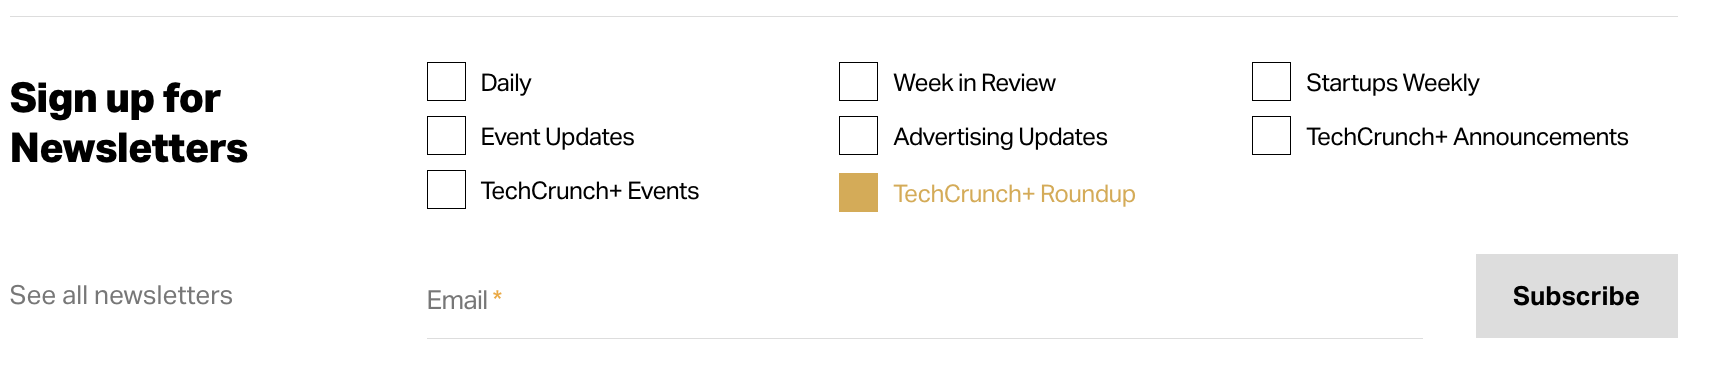 برای خبرنامه جمع بندی TechCrunch+ ثبت نام کنید